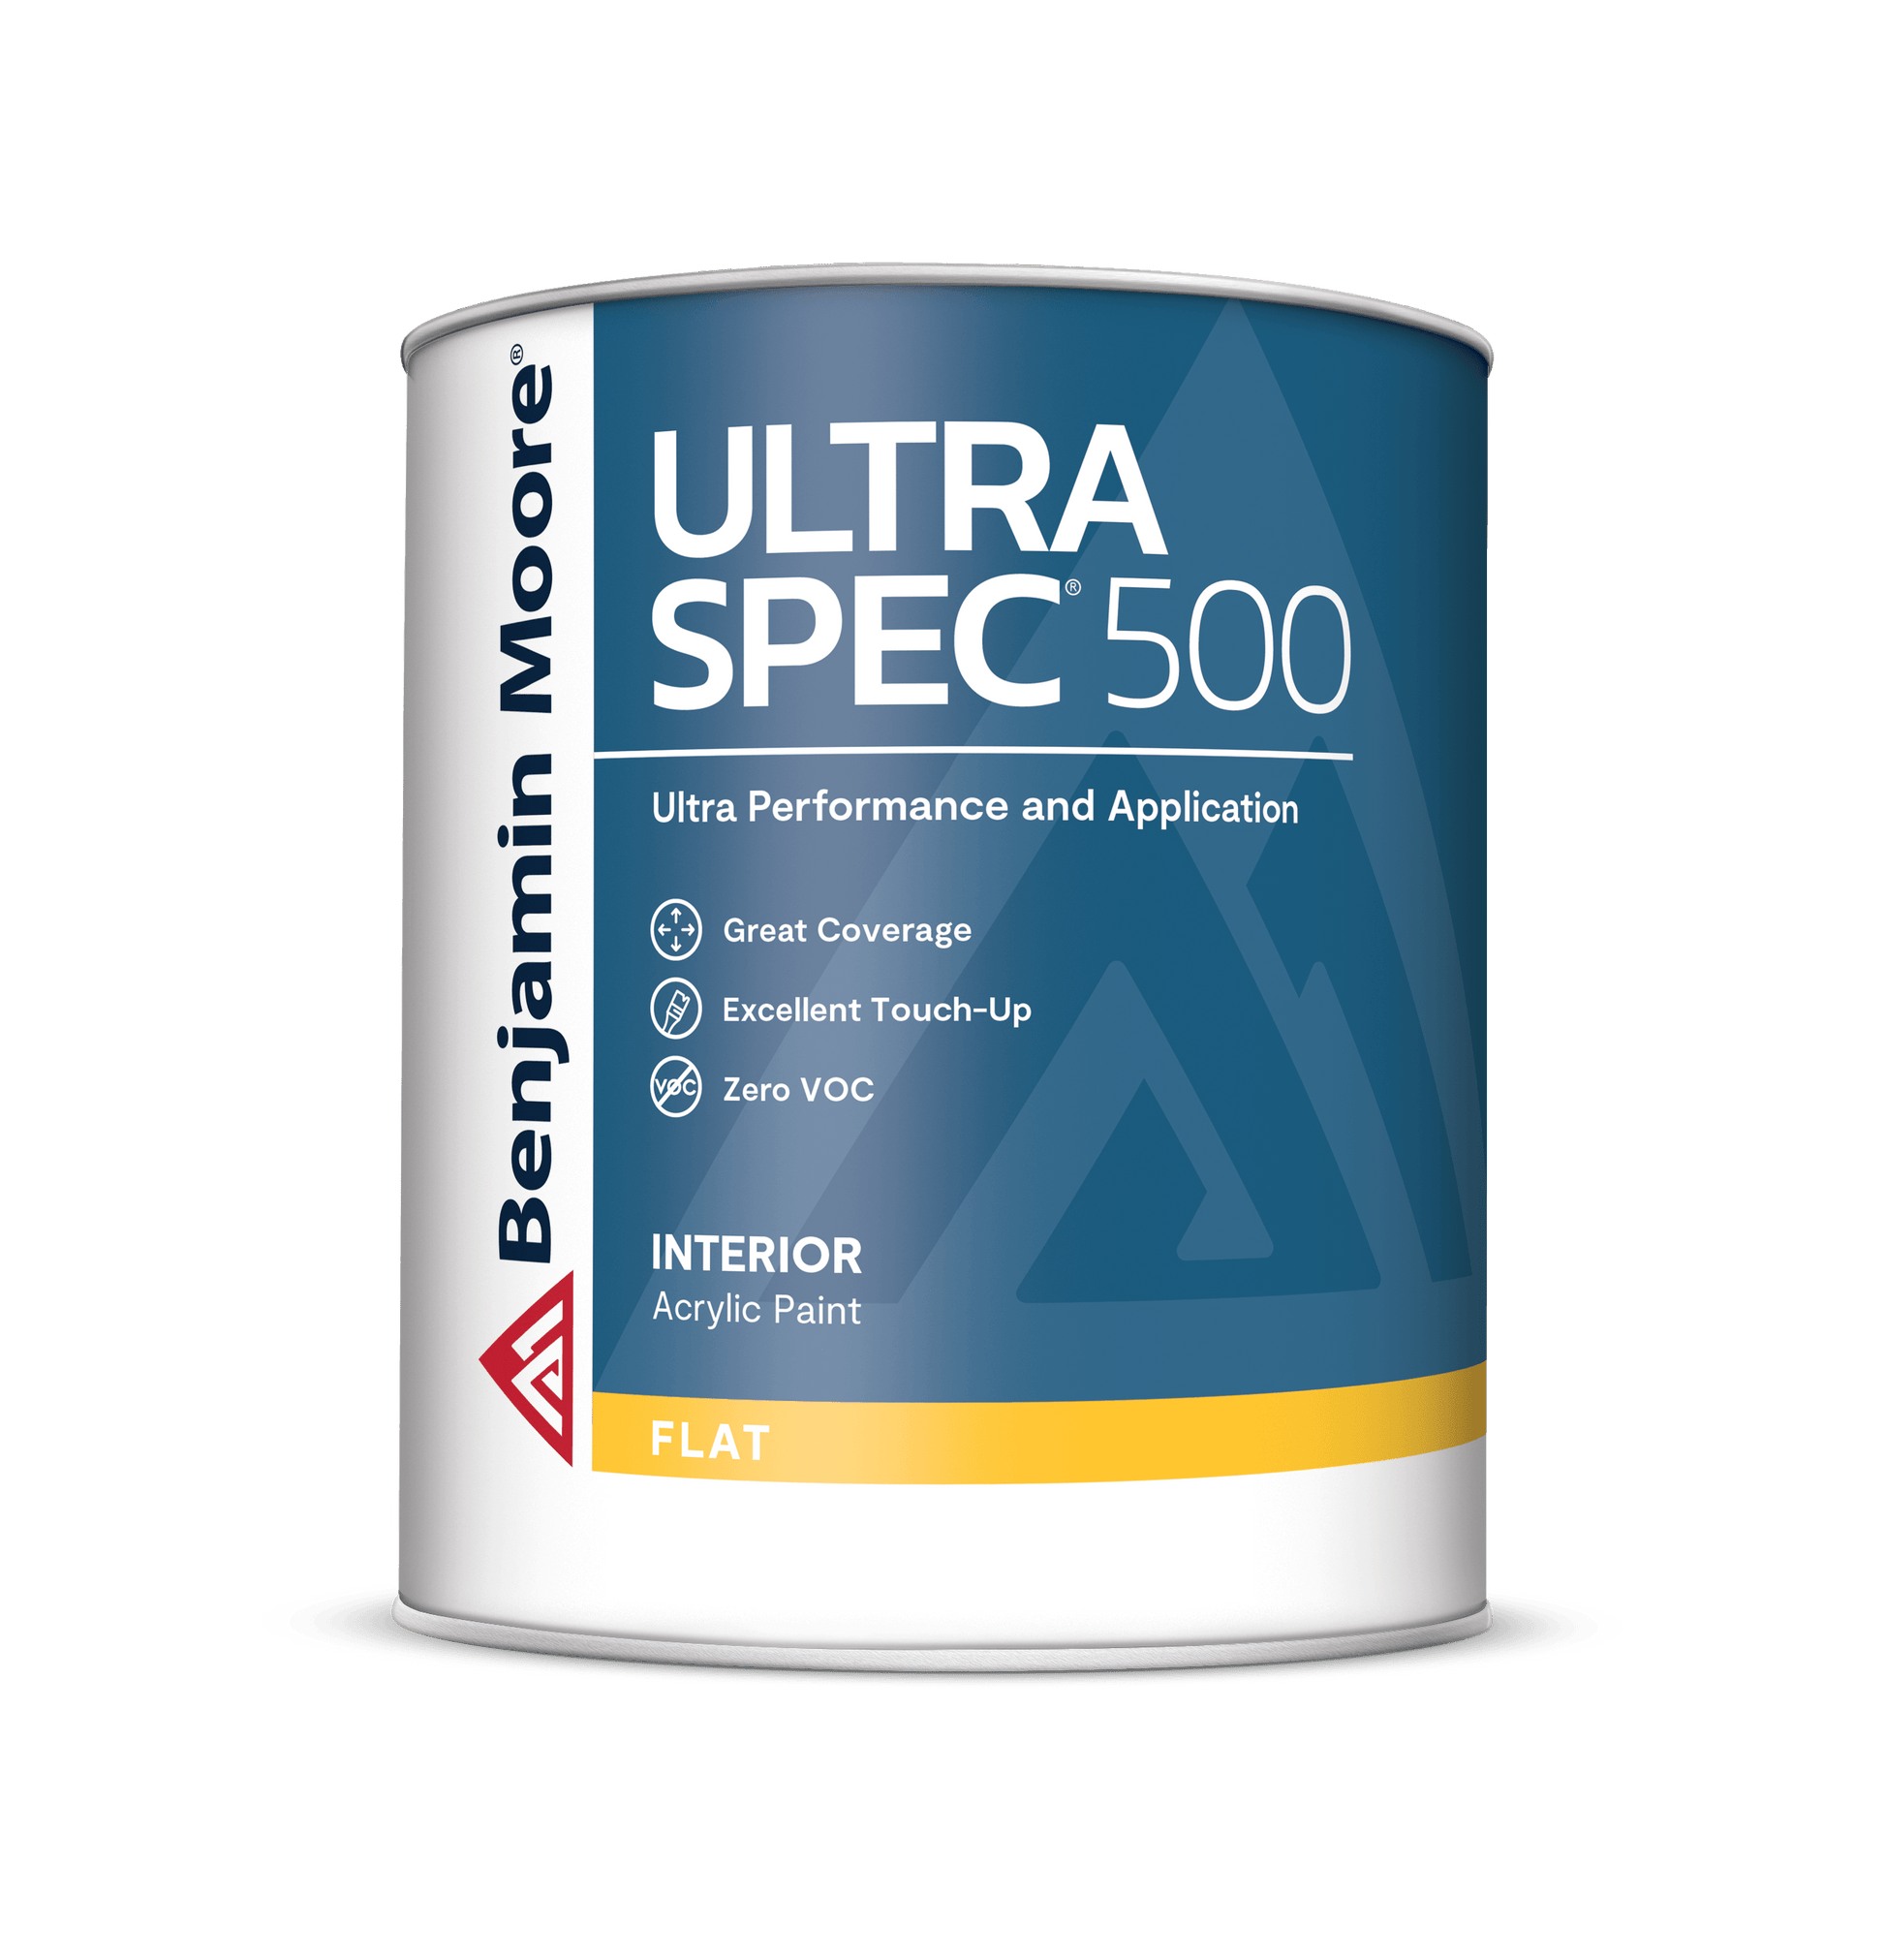 Benjamin Moore Ultra Spec 500 - Rossi Paint Stores - Flat - Quart